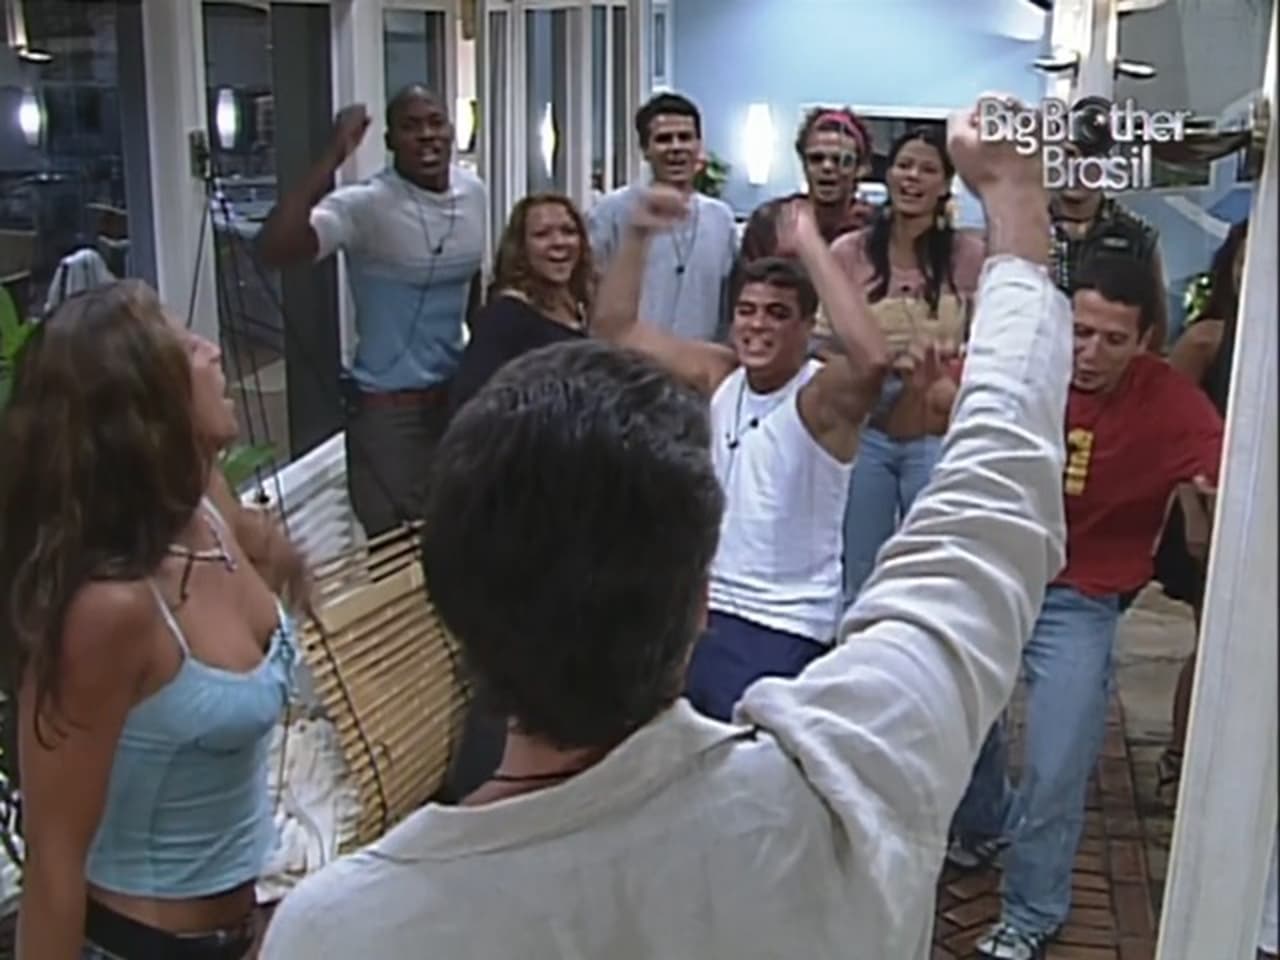 Big Brother Brasil - Season 3 Episode 8 : Episode 8